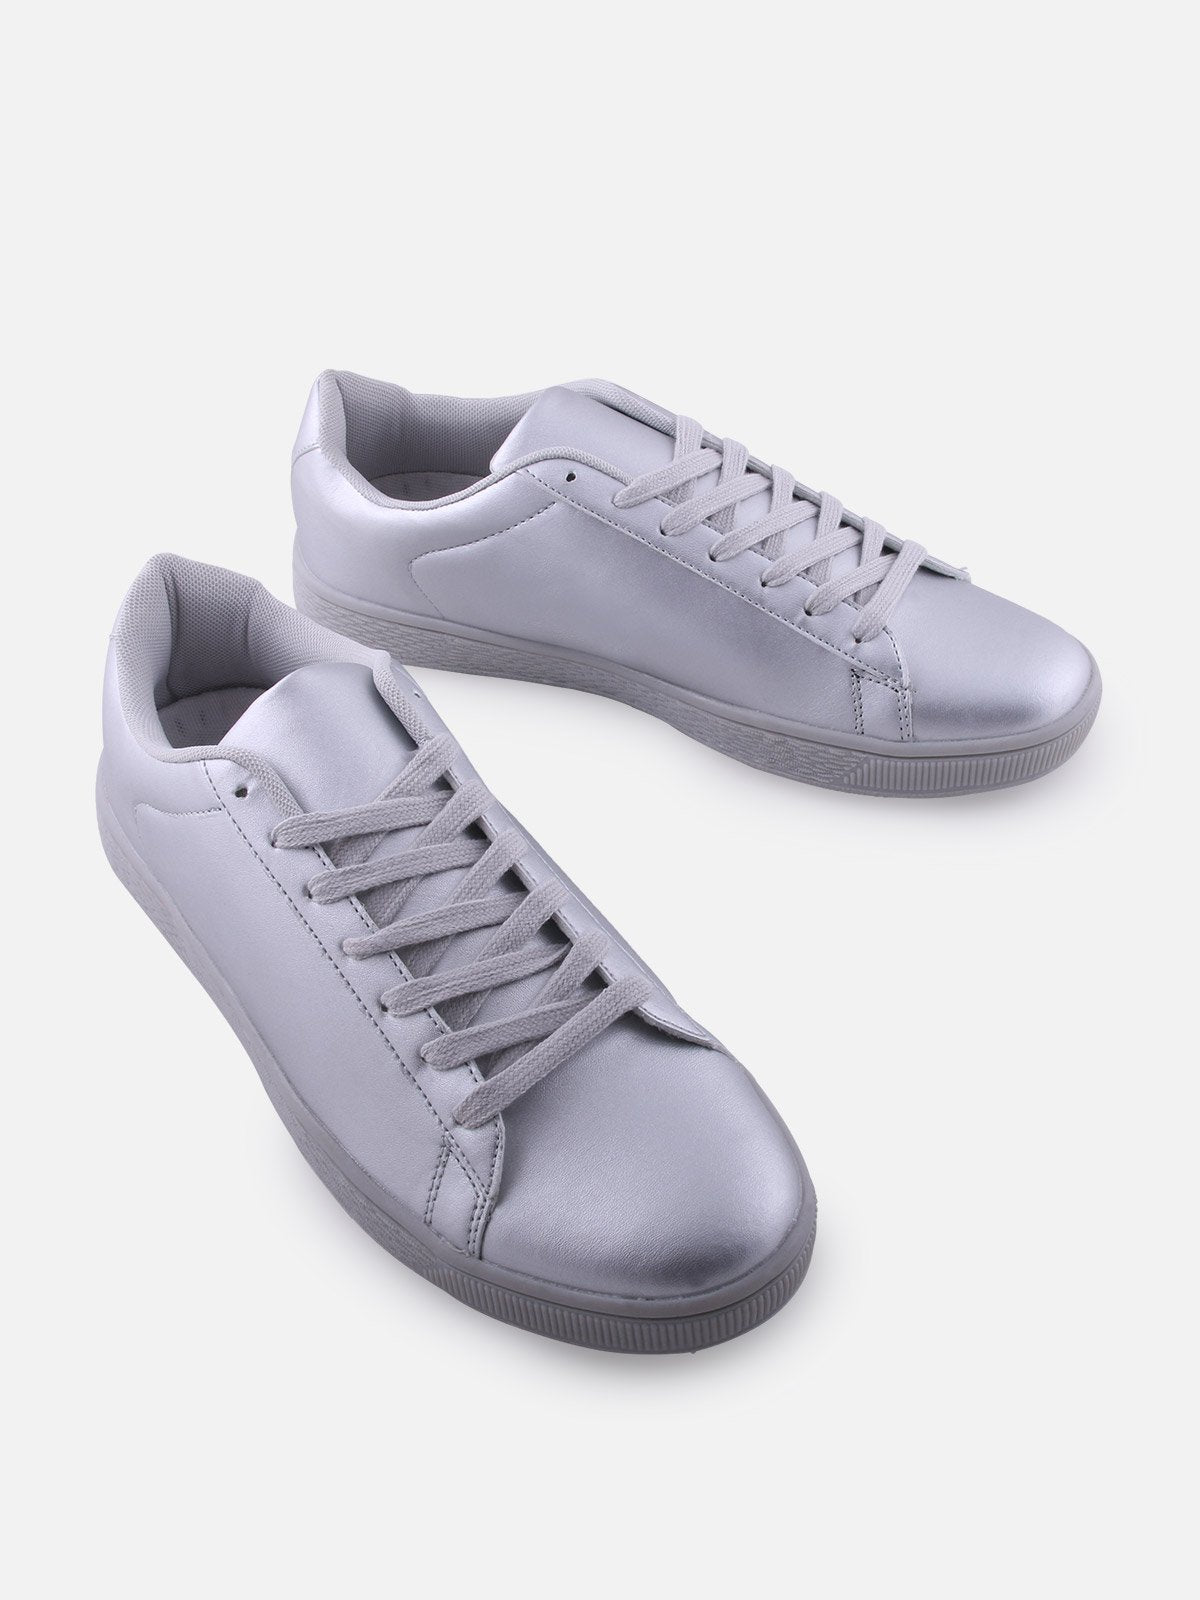 Men's Silver Shoe - FAMSC18-006